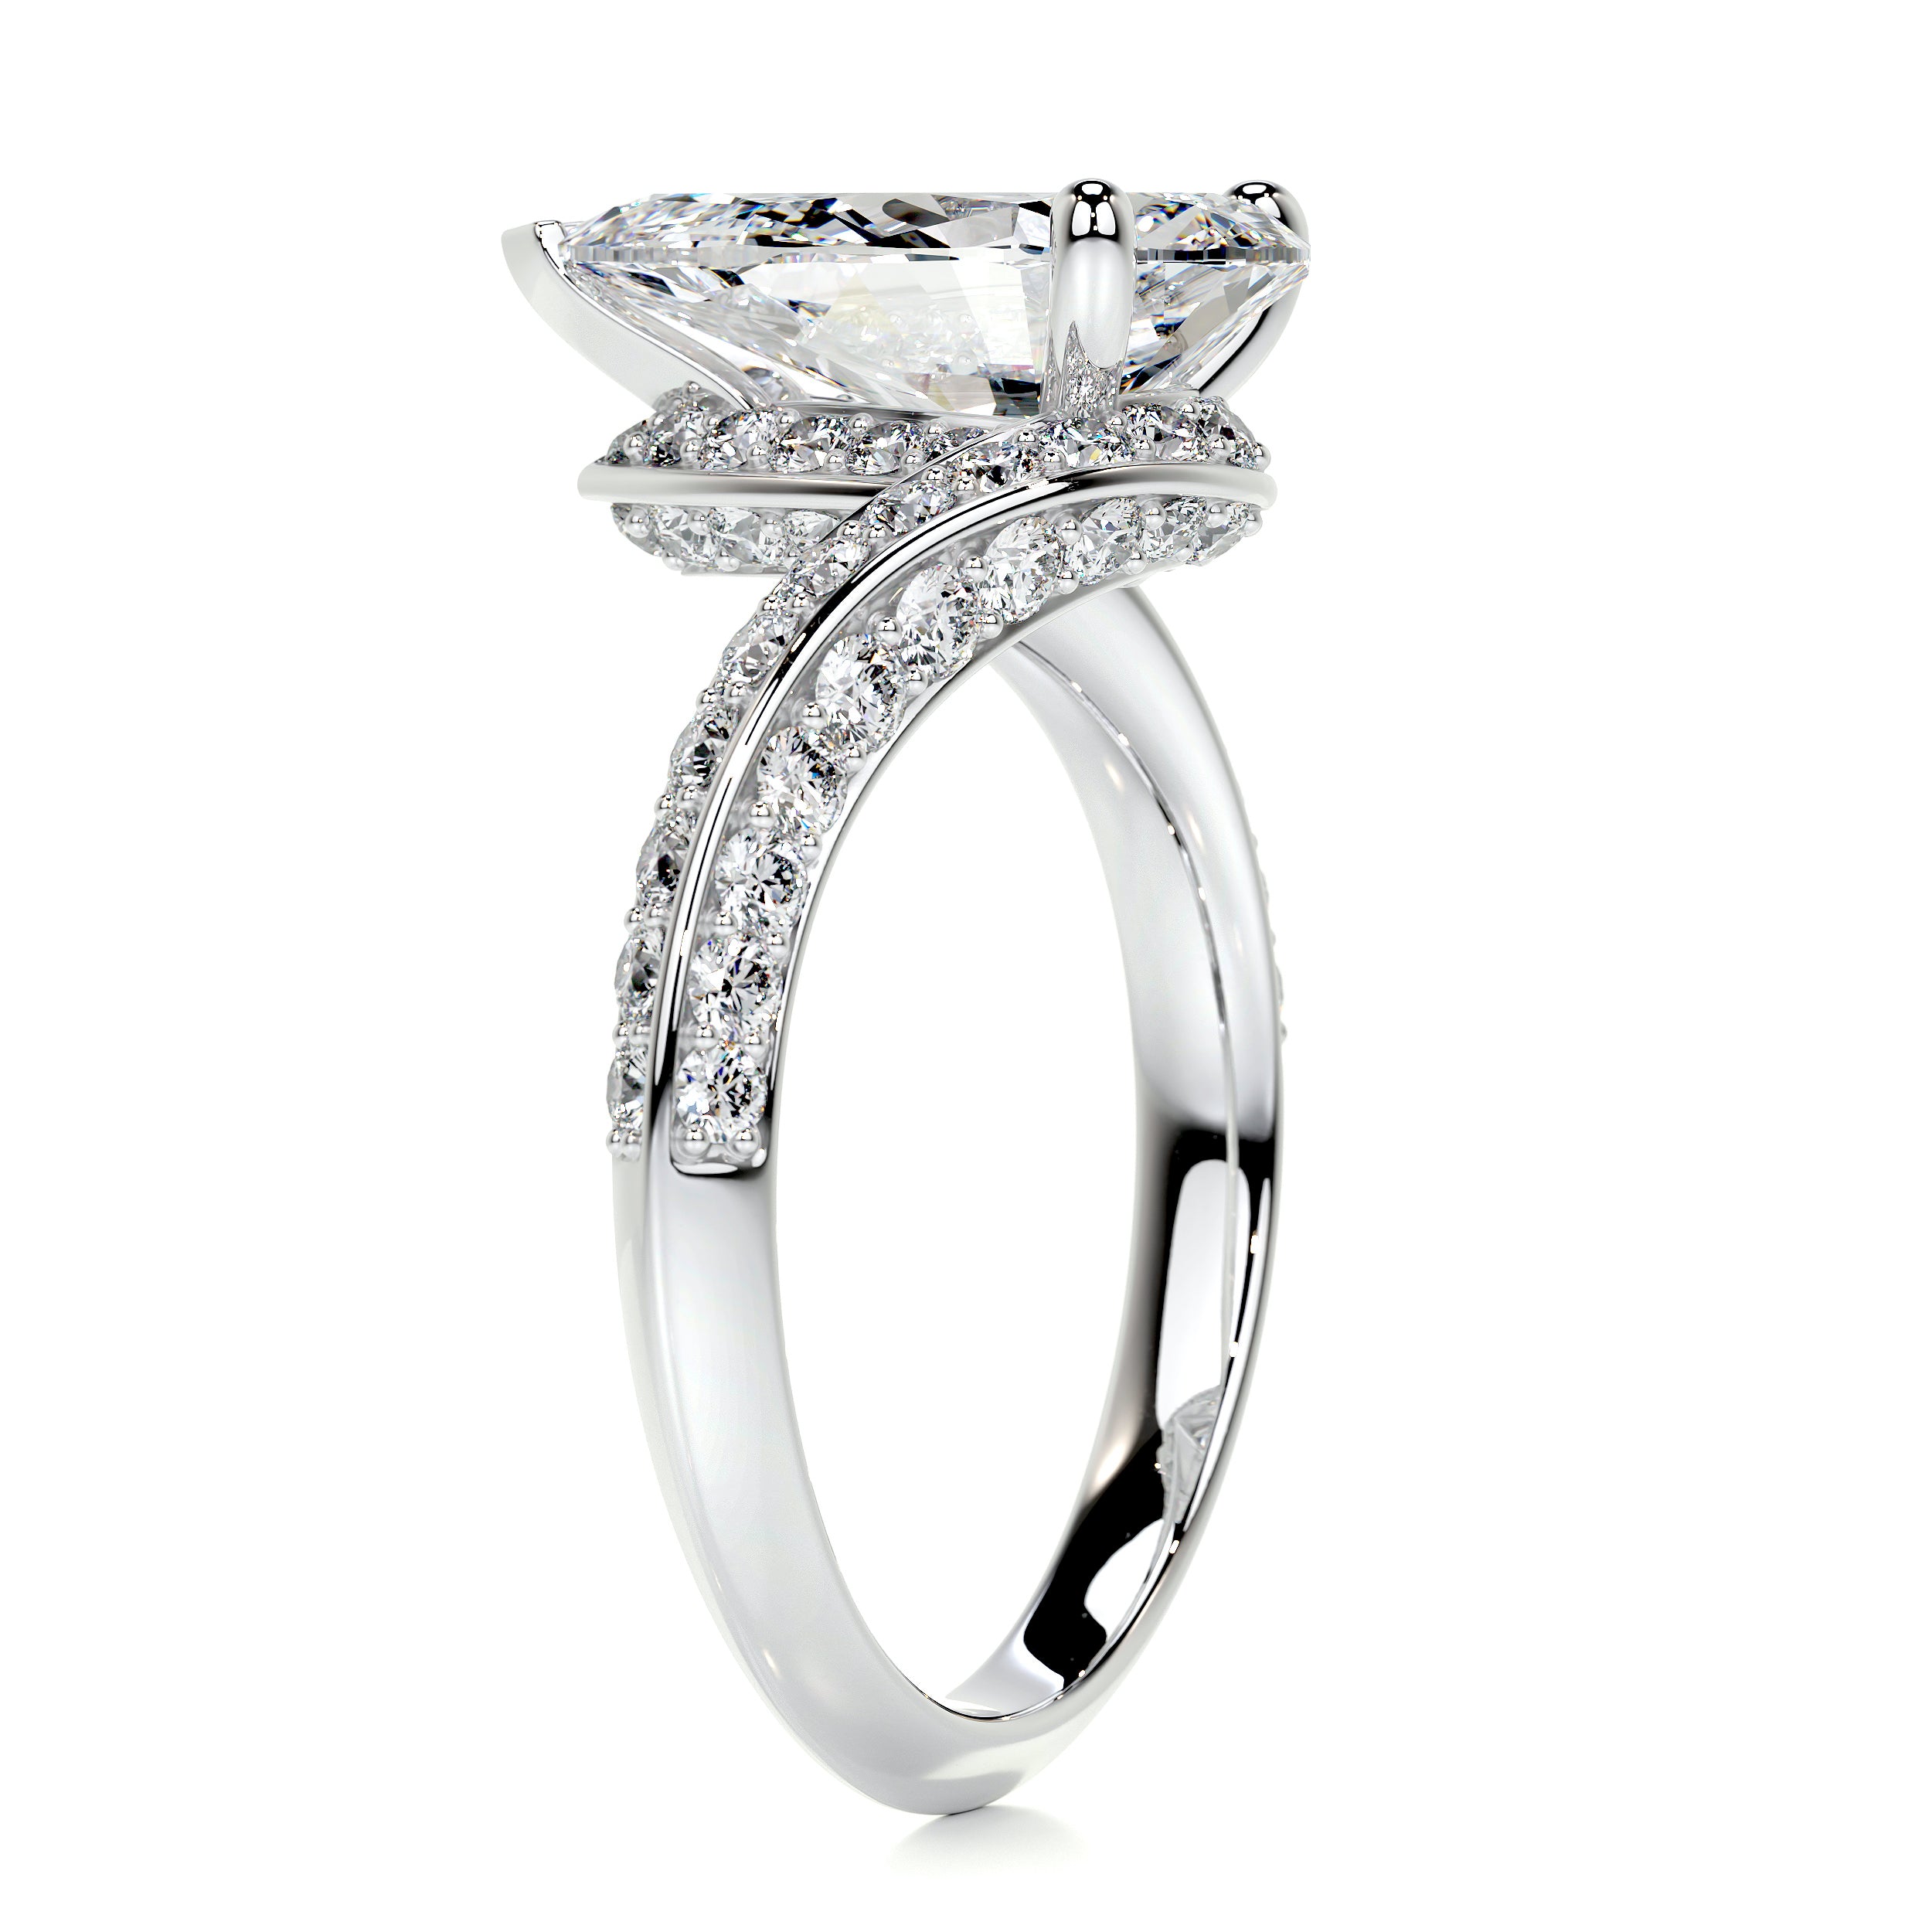 Sabrina Diamond Engagement Ring   (2.5 Carat) -18K White Gold